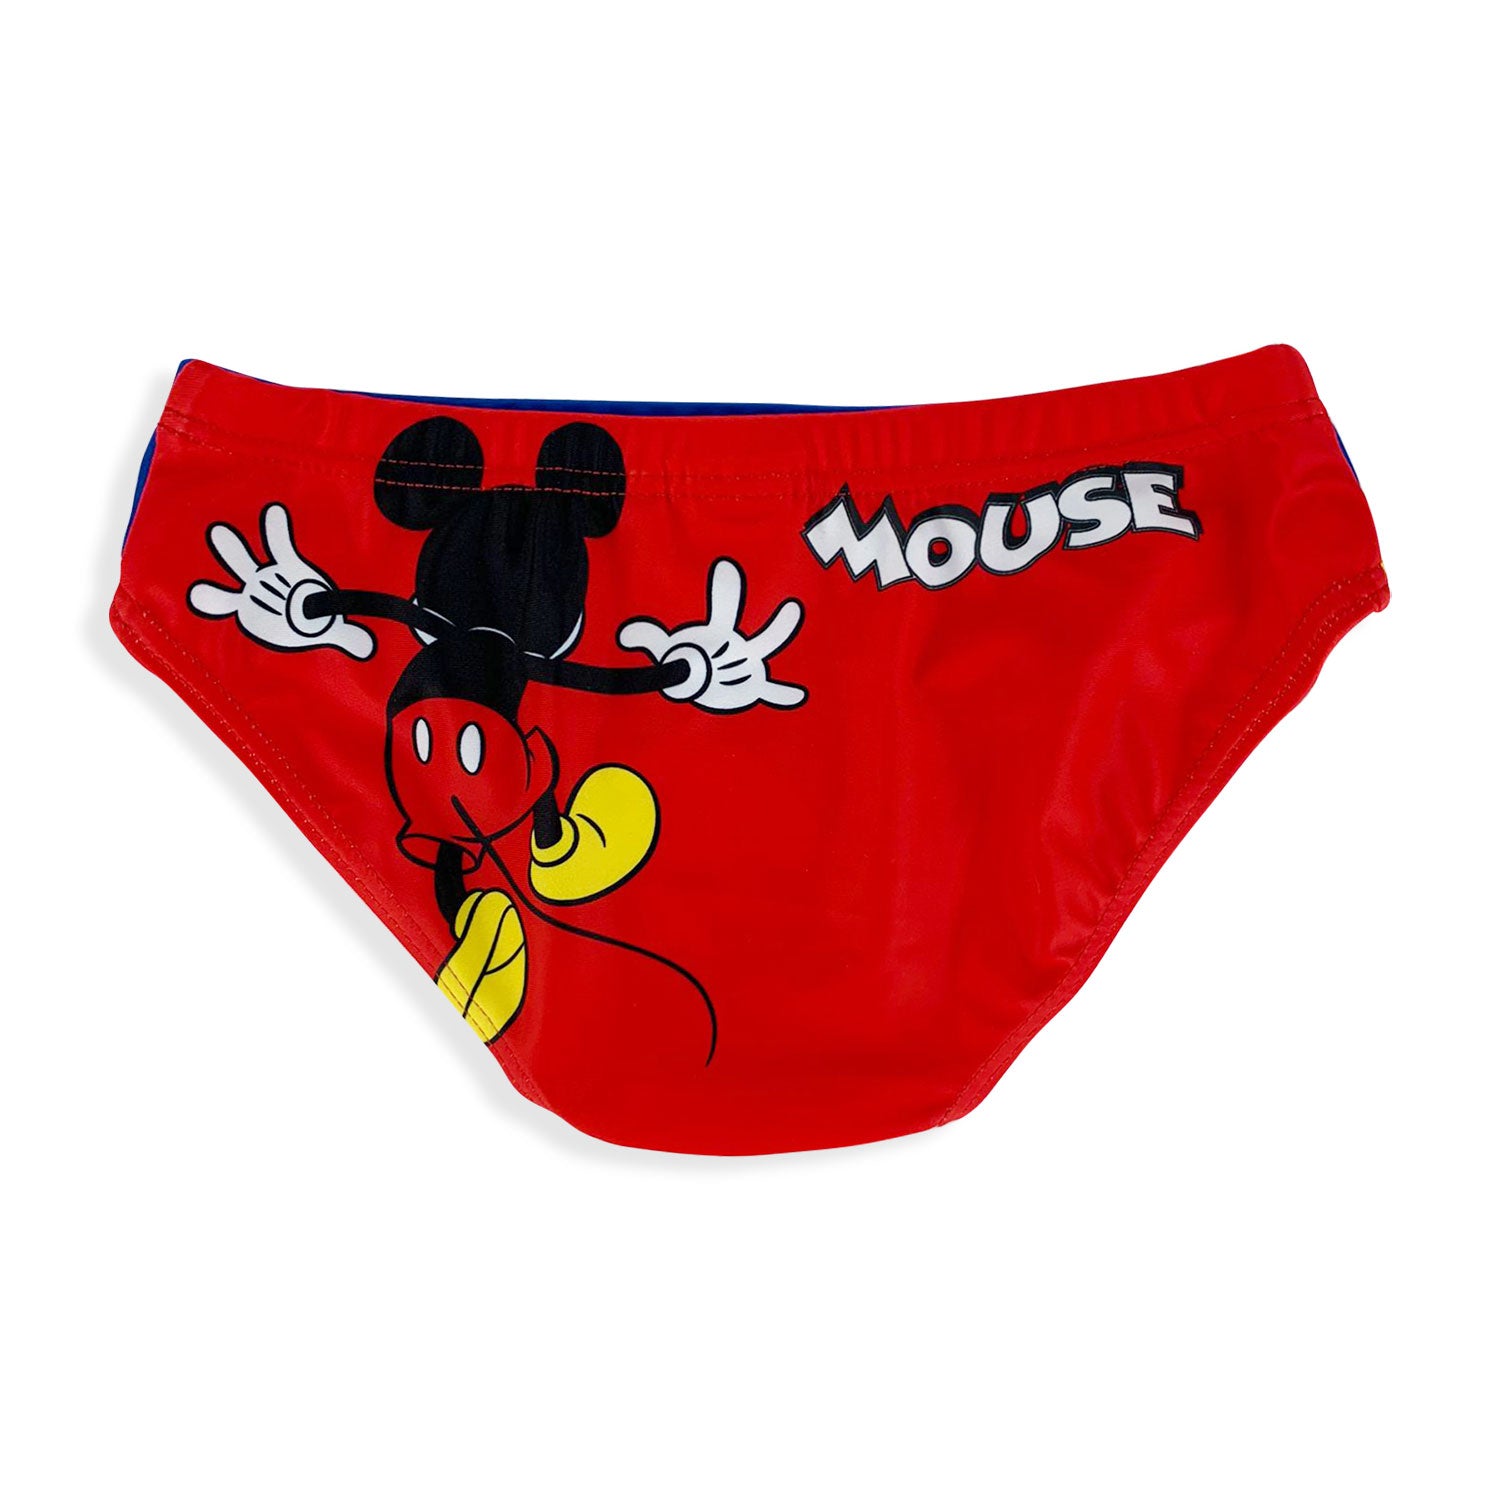 Costume mare ufficiale Disney Mickey Mouse per bambino slip piscina 5356